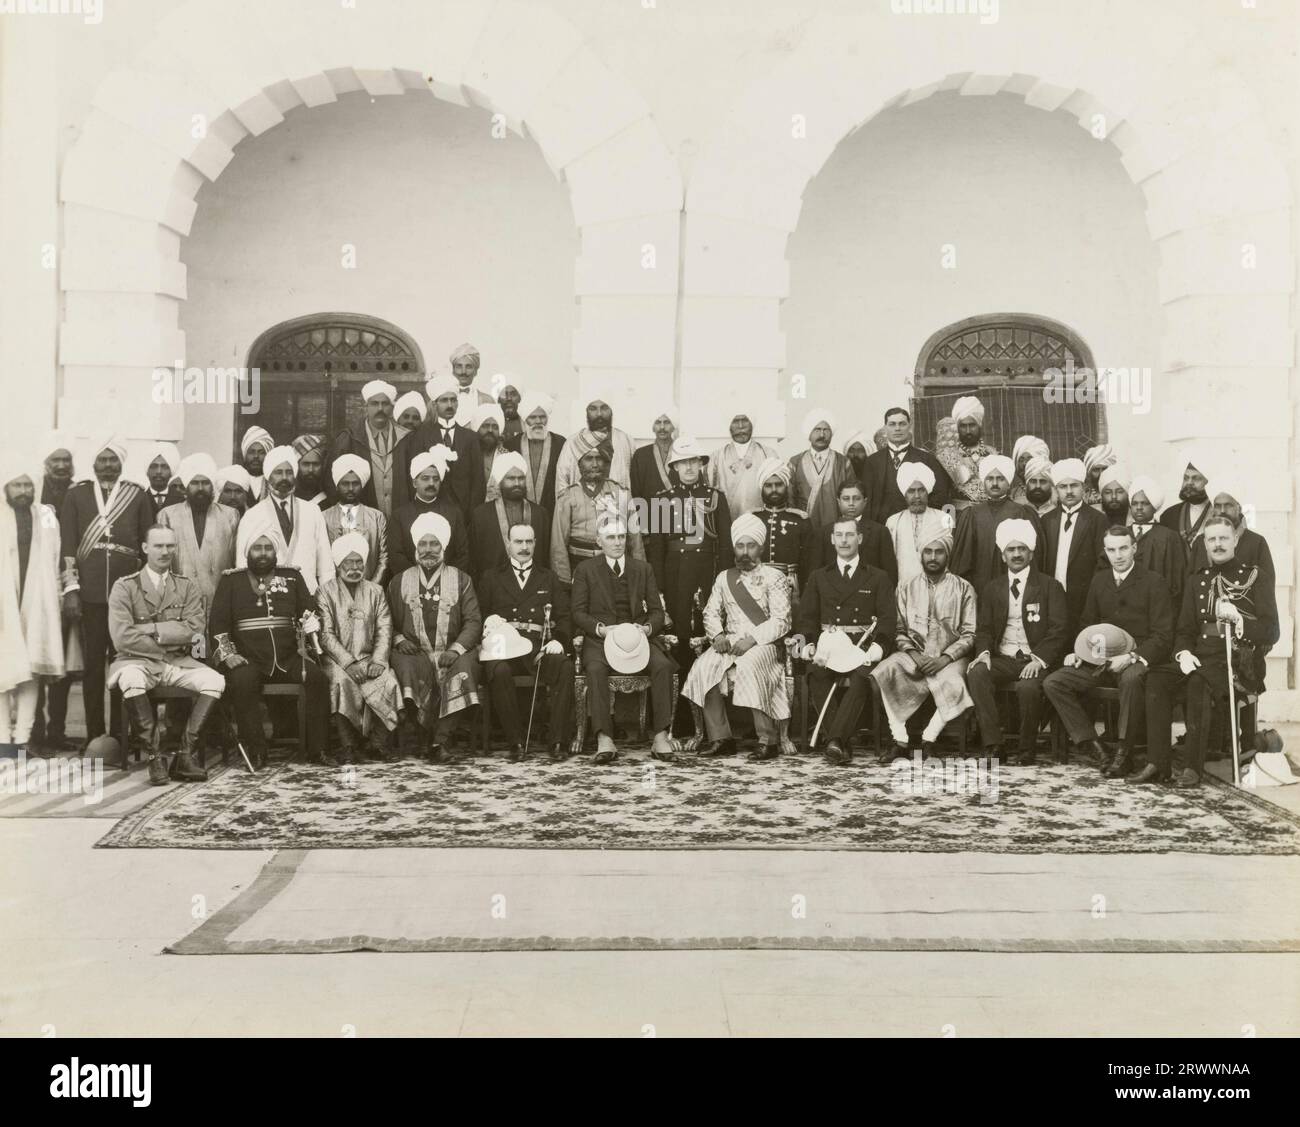 Gruppenfoto von indischen und europäischen Würdenträgern und Soldaten in zeremonieller Kleidung, möglicherweise auf Edward Maclagans Installation als Gouverneur des Punjab. Stockfoto